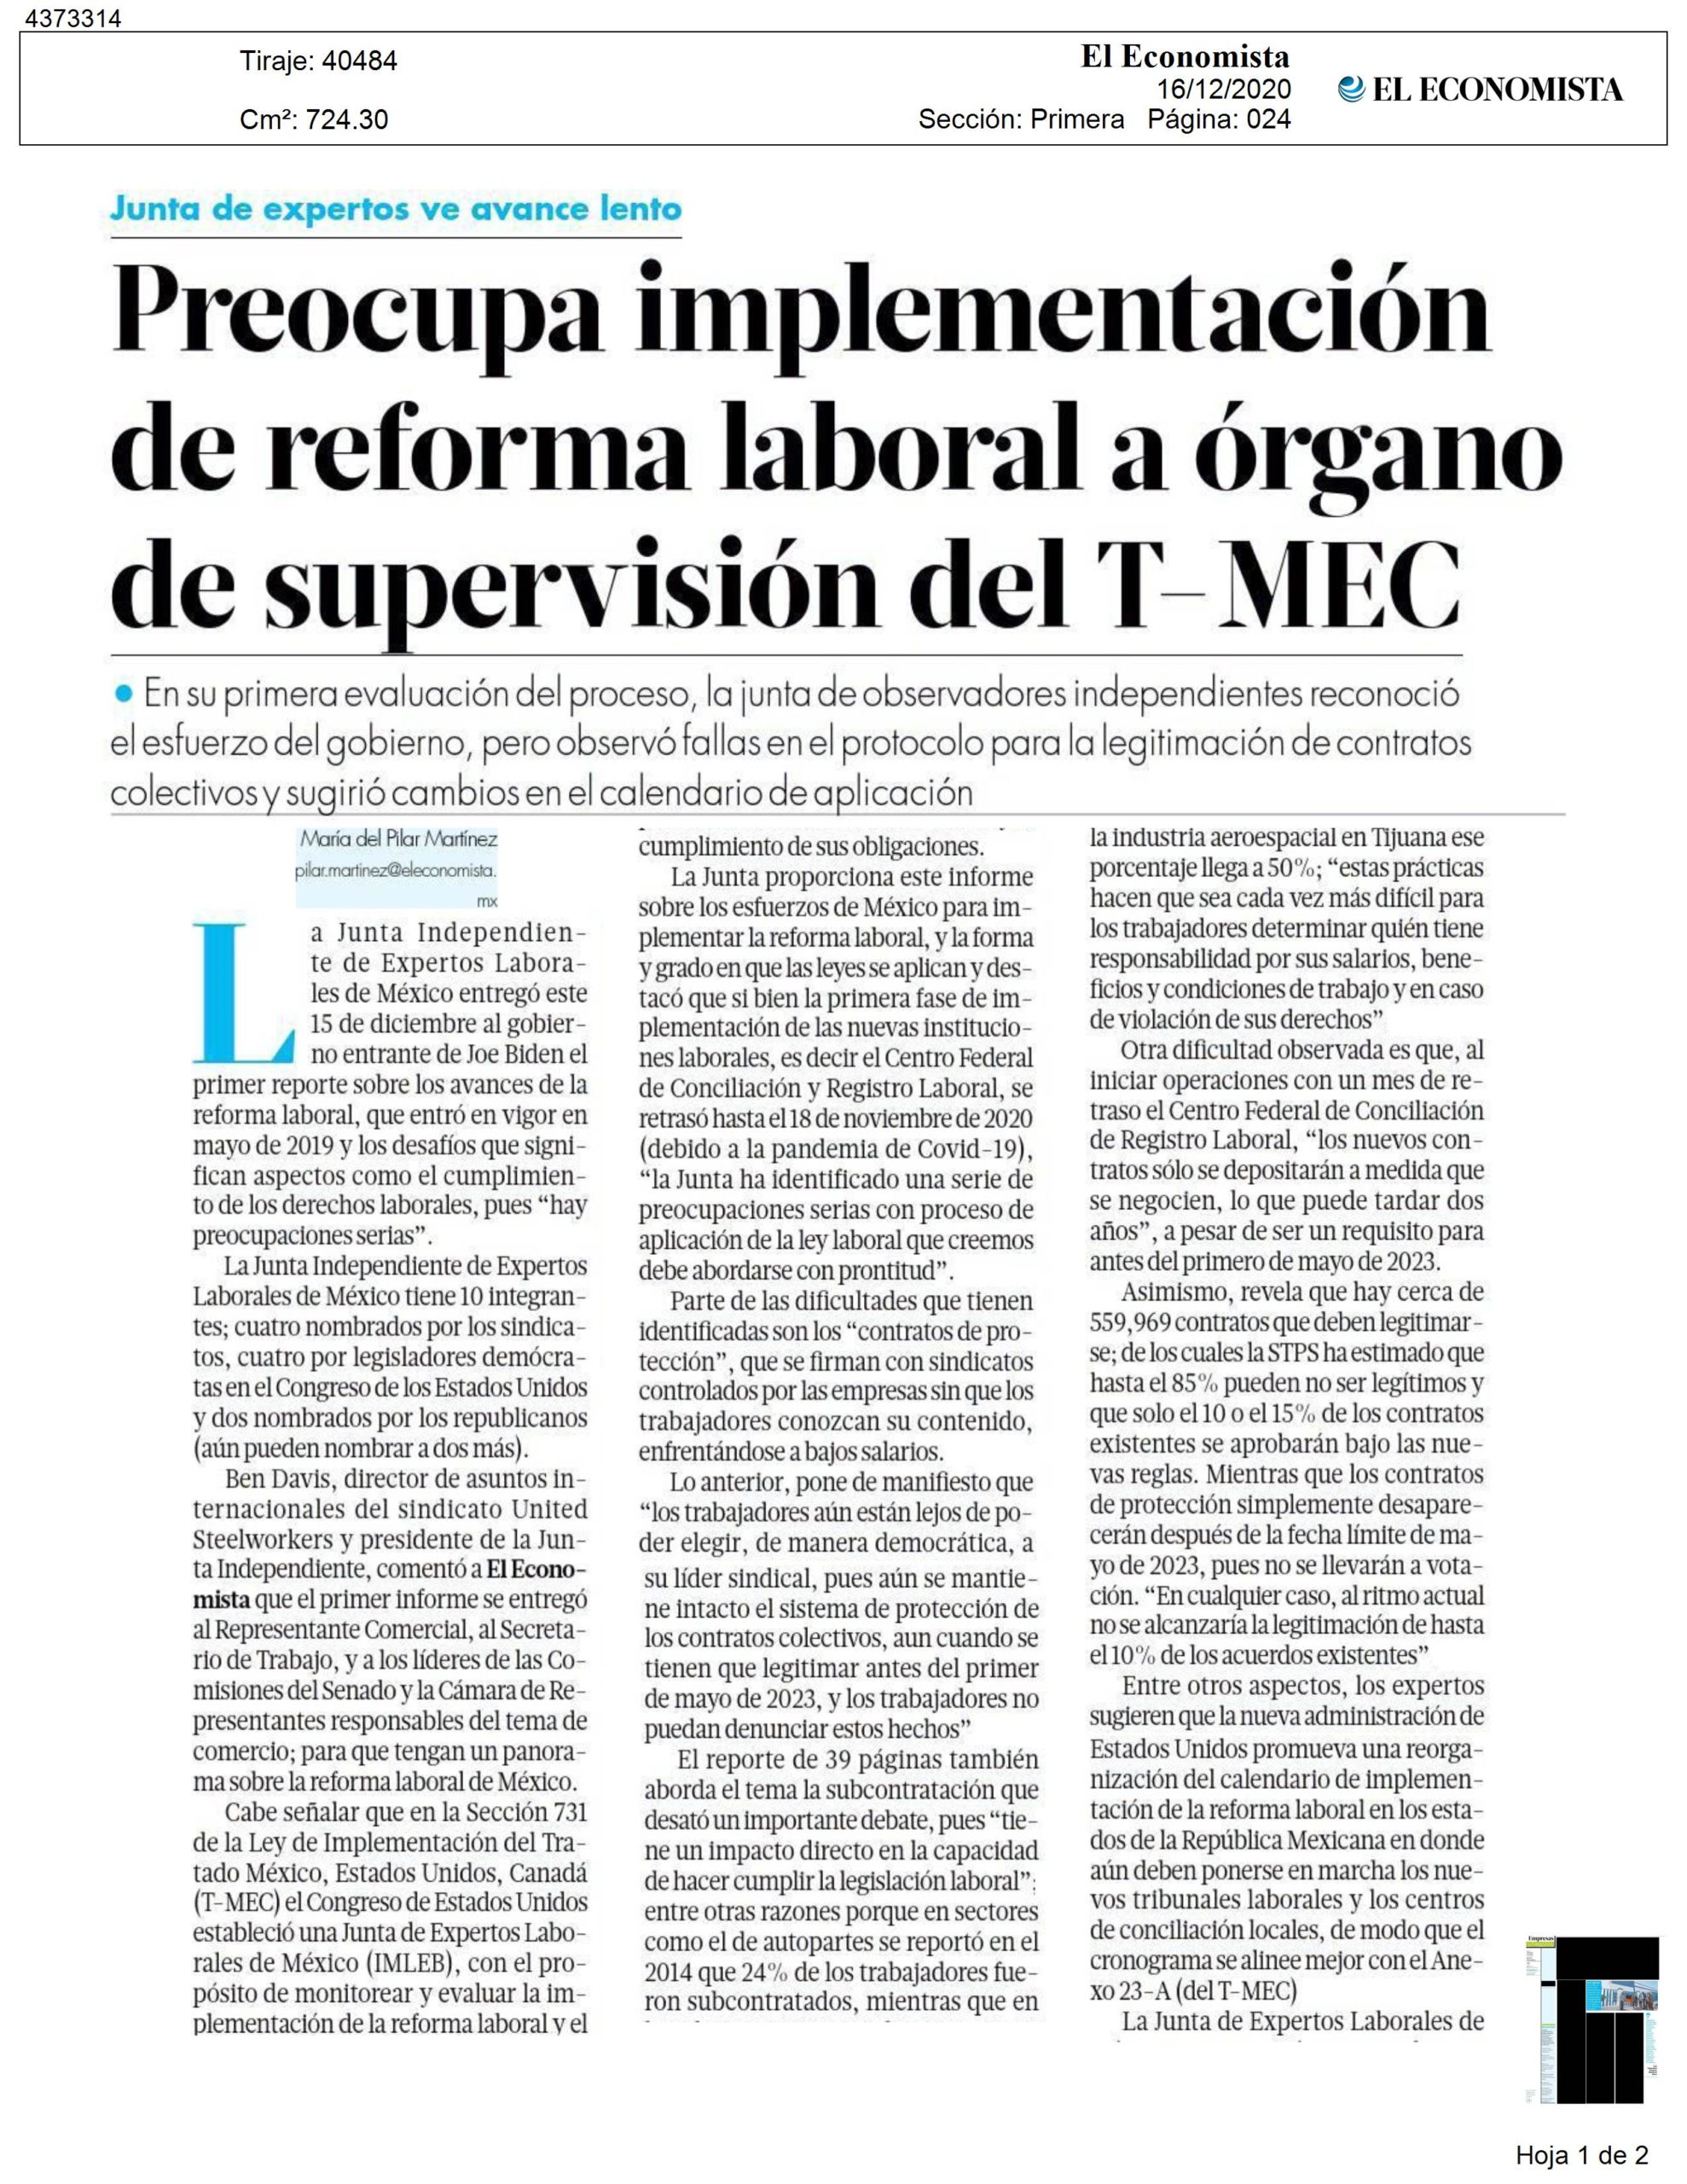 Preocupa implementación de reforma laboral a órgano de supervisión del T-MEC  